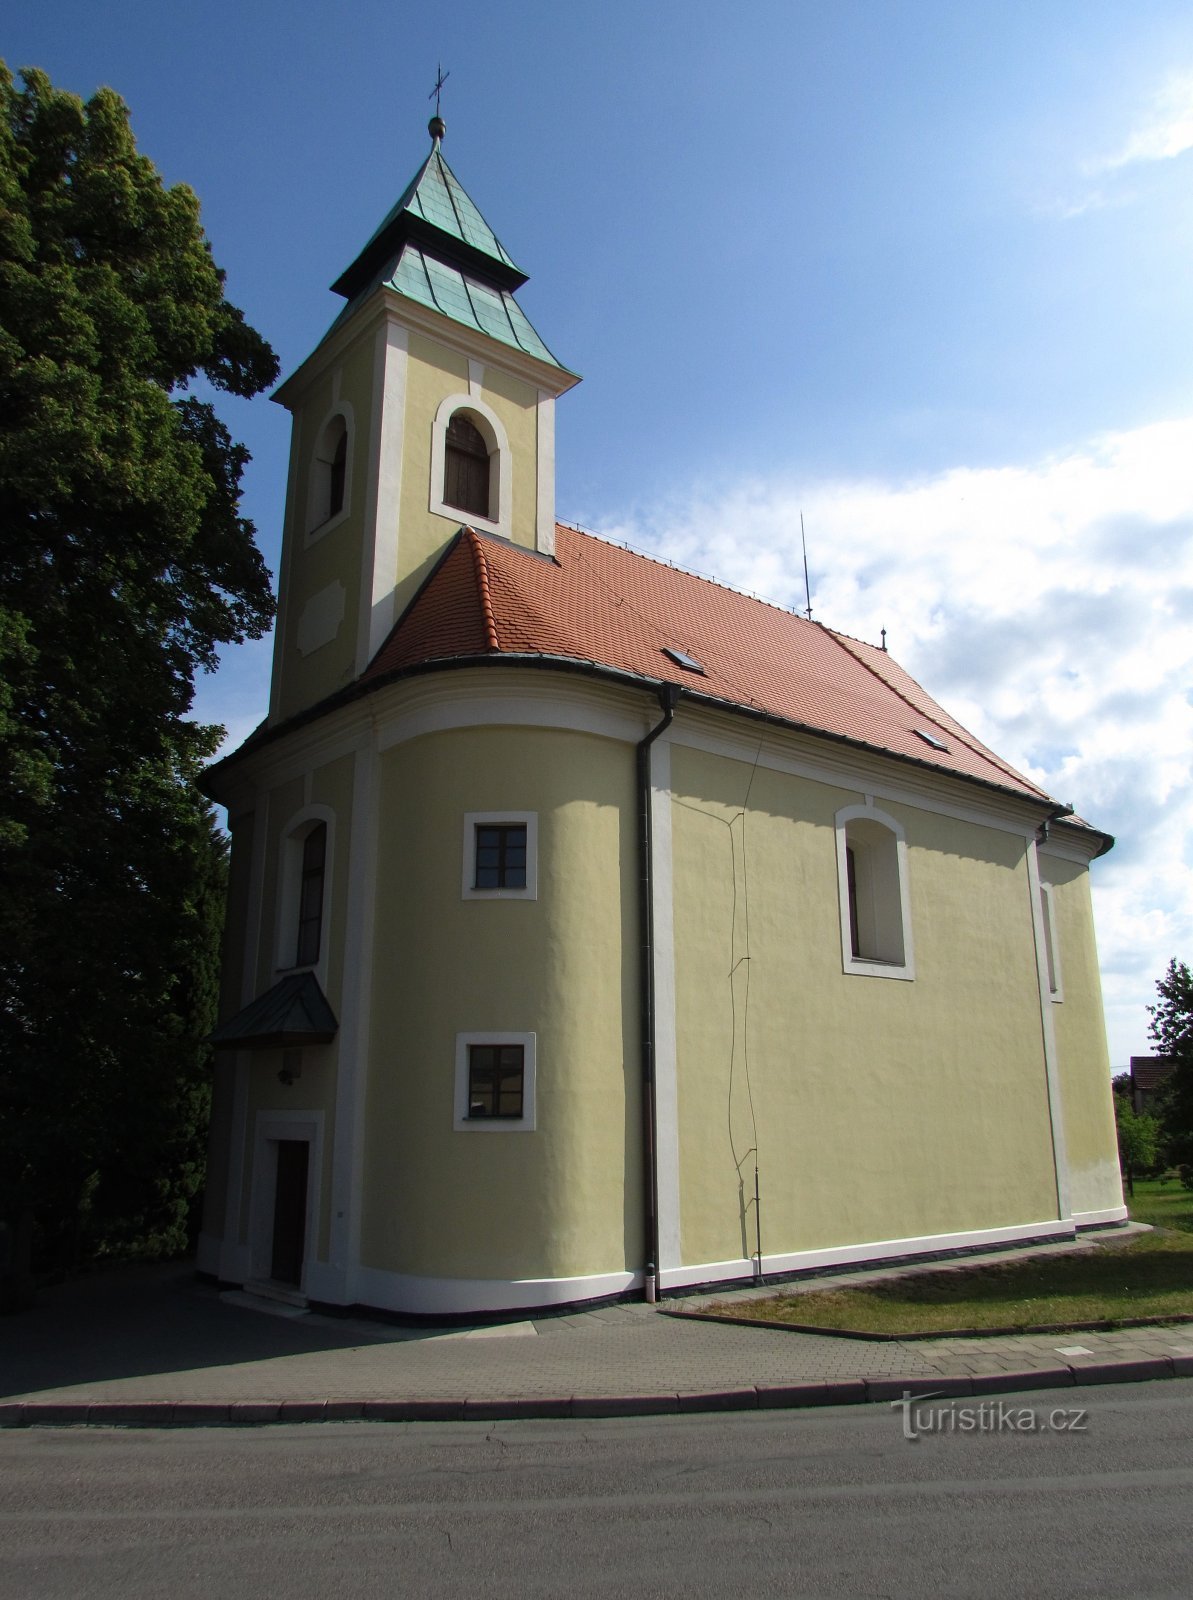 Bukovinka - Chiesa dell'Assunzione della Vergine Maria